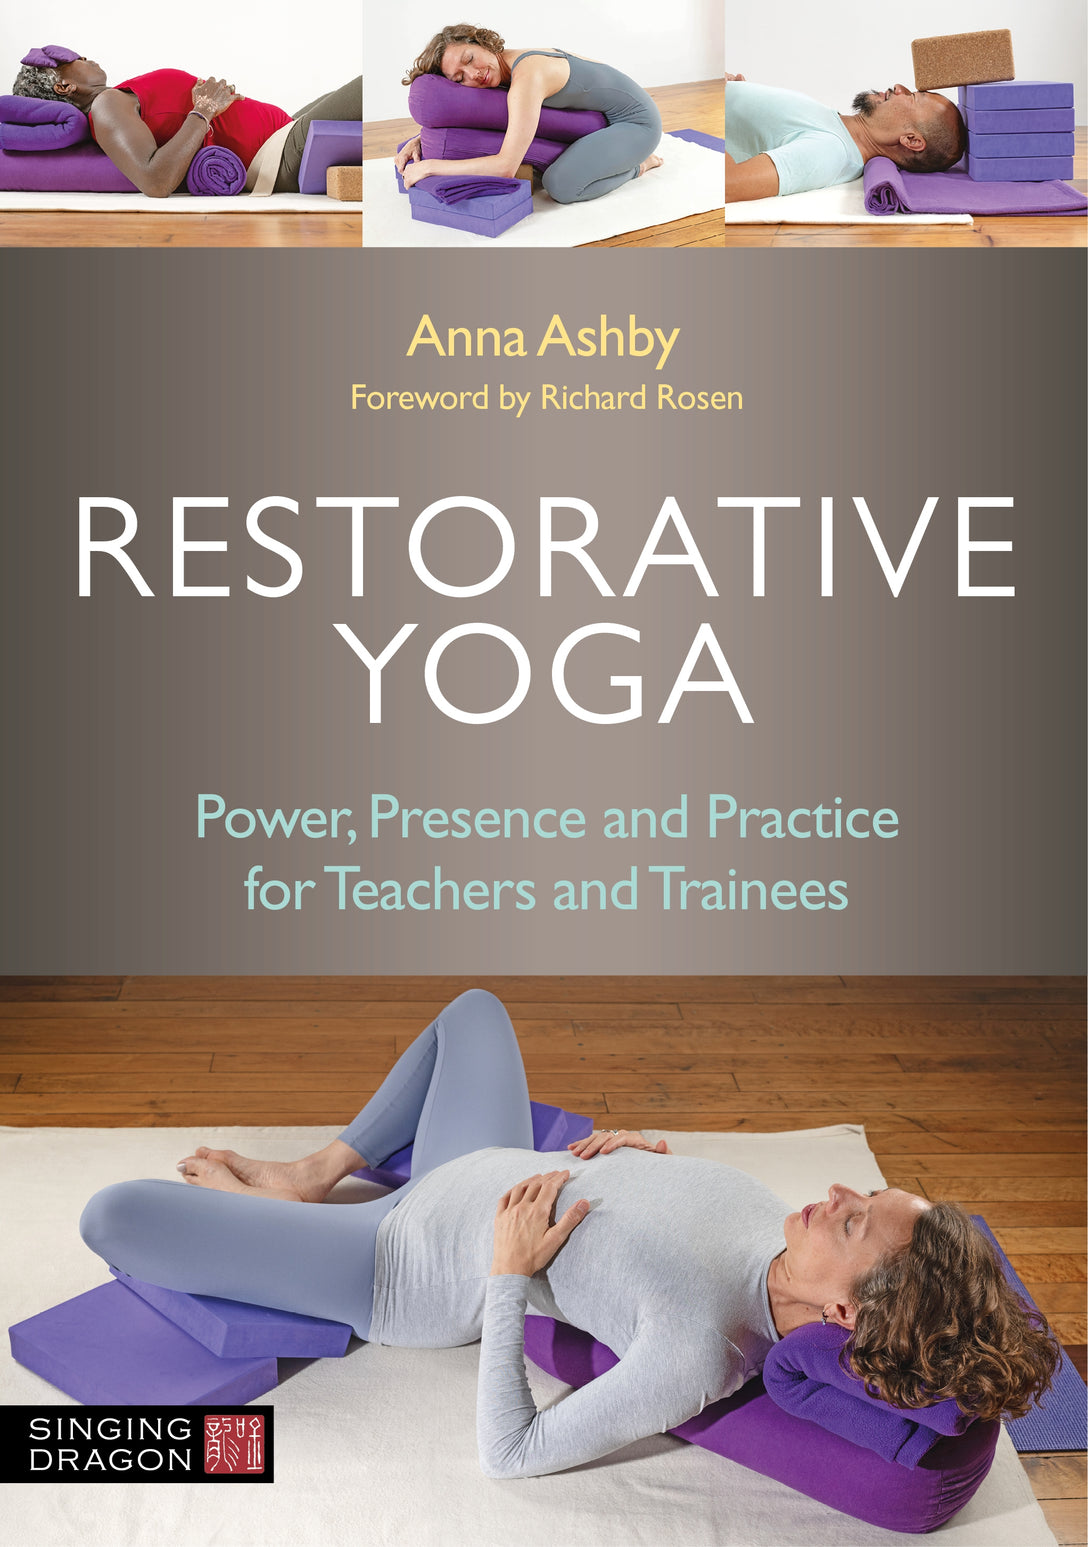 Restorative Yoga by Richard Rosen, Anna Ashby